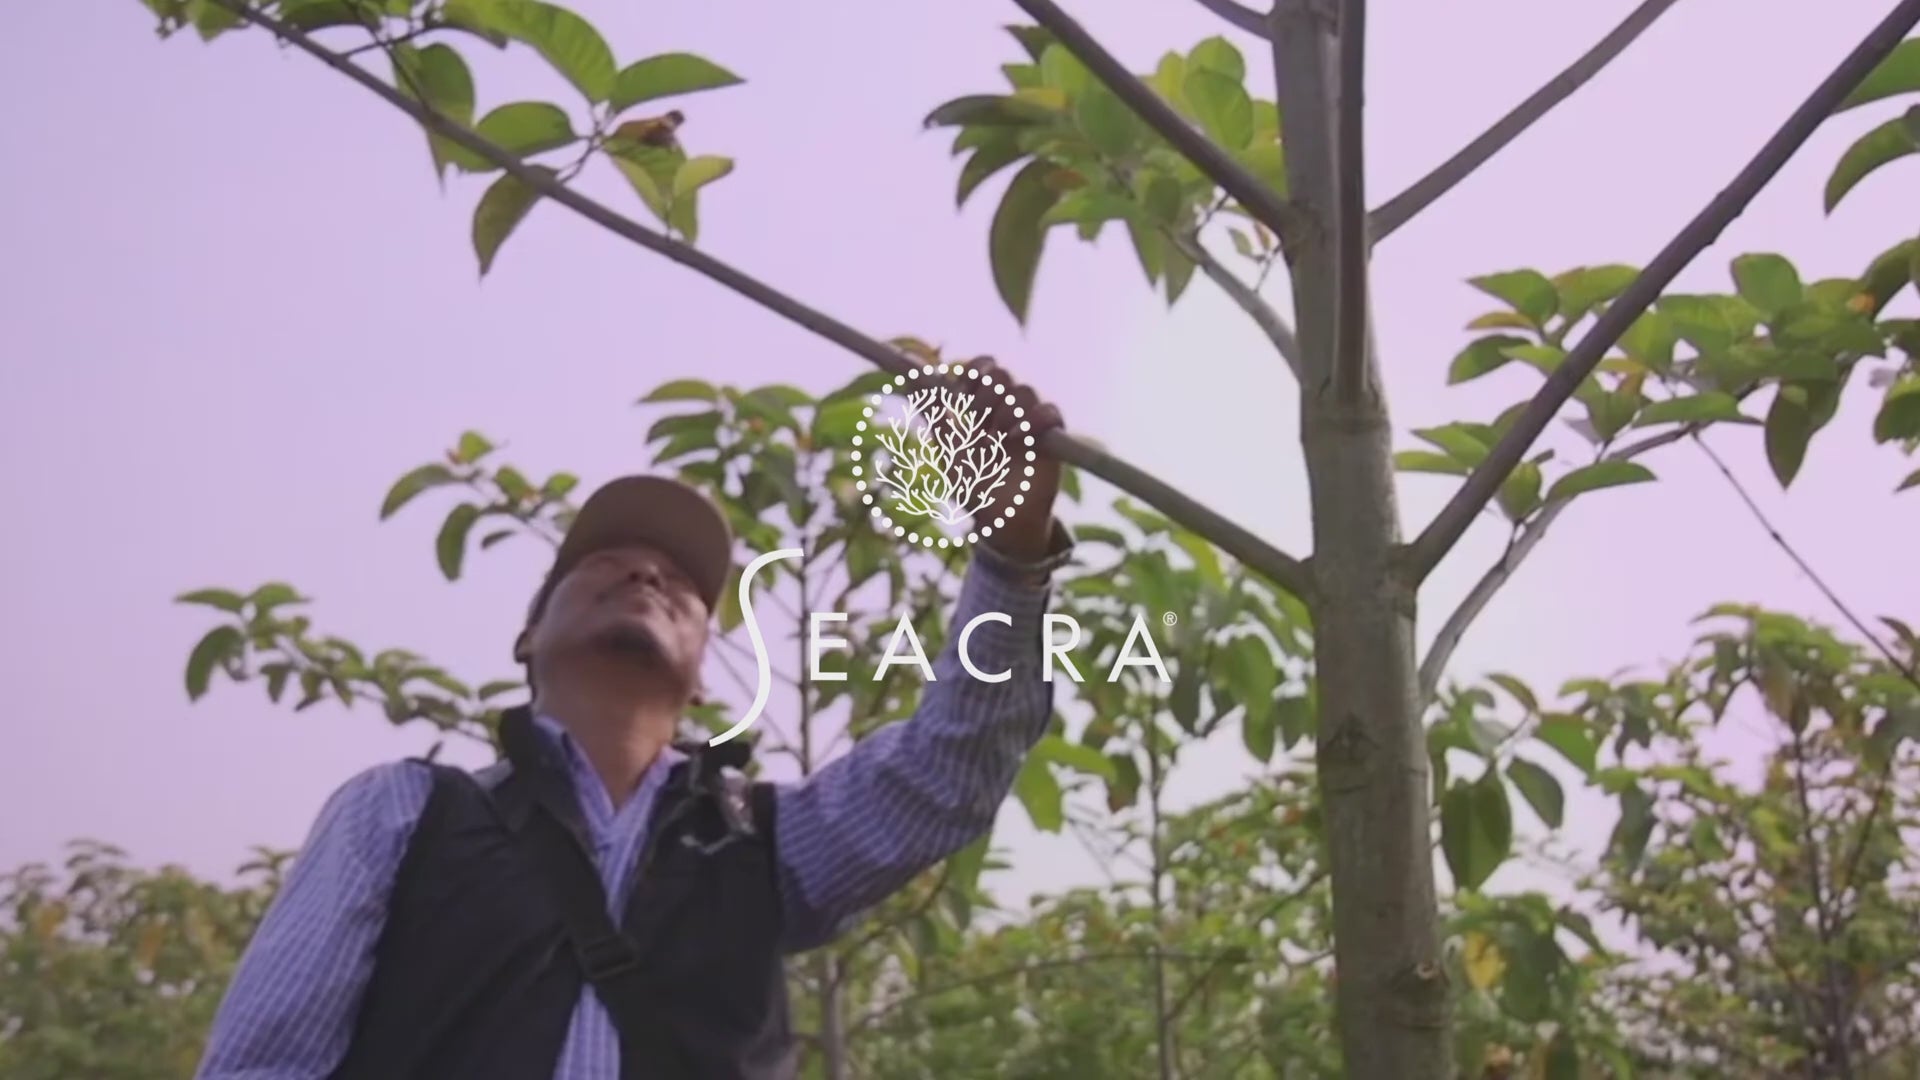 Įkelti vaizdo įrašą: „Eden Project“ ir Seacra odos priežiūros misija